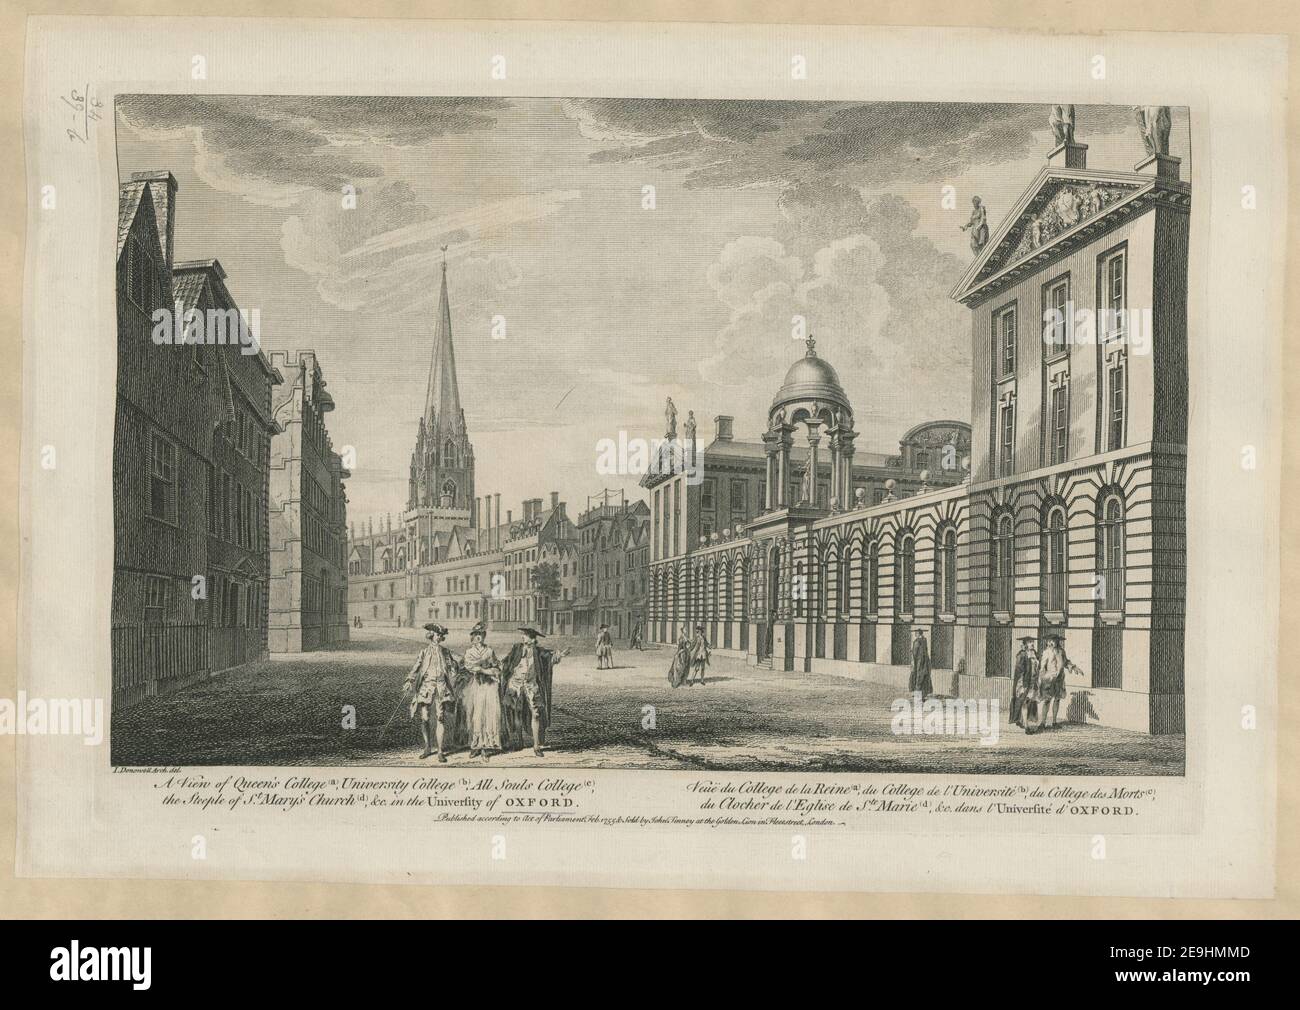 A View of Queen's College (a), University College (b), All Souls College (c), der Kirchturm der St. Mary's Church (d), & c. in der University of OXFORD. = VeueÃà du College de la reine (A), du College de l'UniversiteÃÅ ( Autor Donowell, John 34,39.B. Erscheinungsort: [London] Verlag: Published according to Act of Parliament Feb. 1755 , verkauft von John Tinney am Goldenen Löwen in Fleetstreet, London. Erscheinungsdatum: [Februar 1755] Objekttyp: 1 Druckmedium: Radierung Maße: Plattenmark 29,0 x 43,3 cm, auf Blatt 33,8 x 49,0 cm. Ehemaliger Besitzer: George Stockfoto